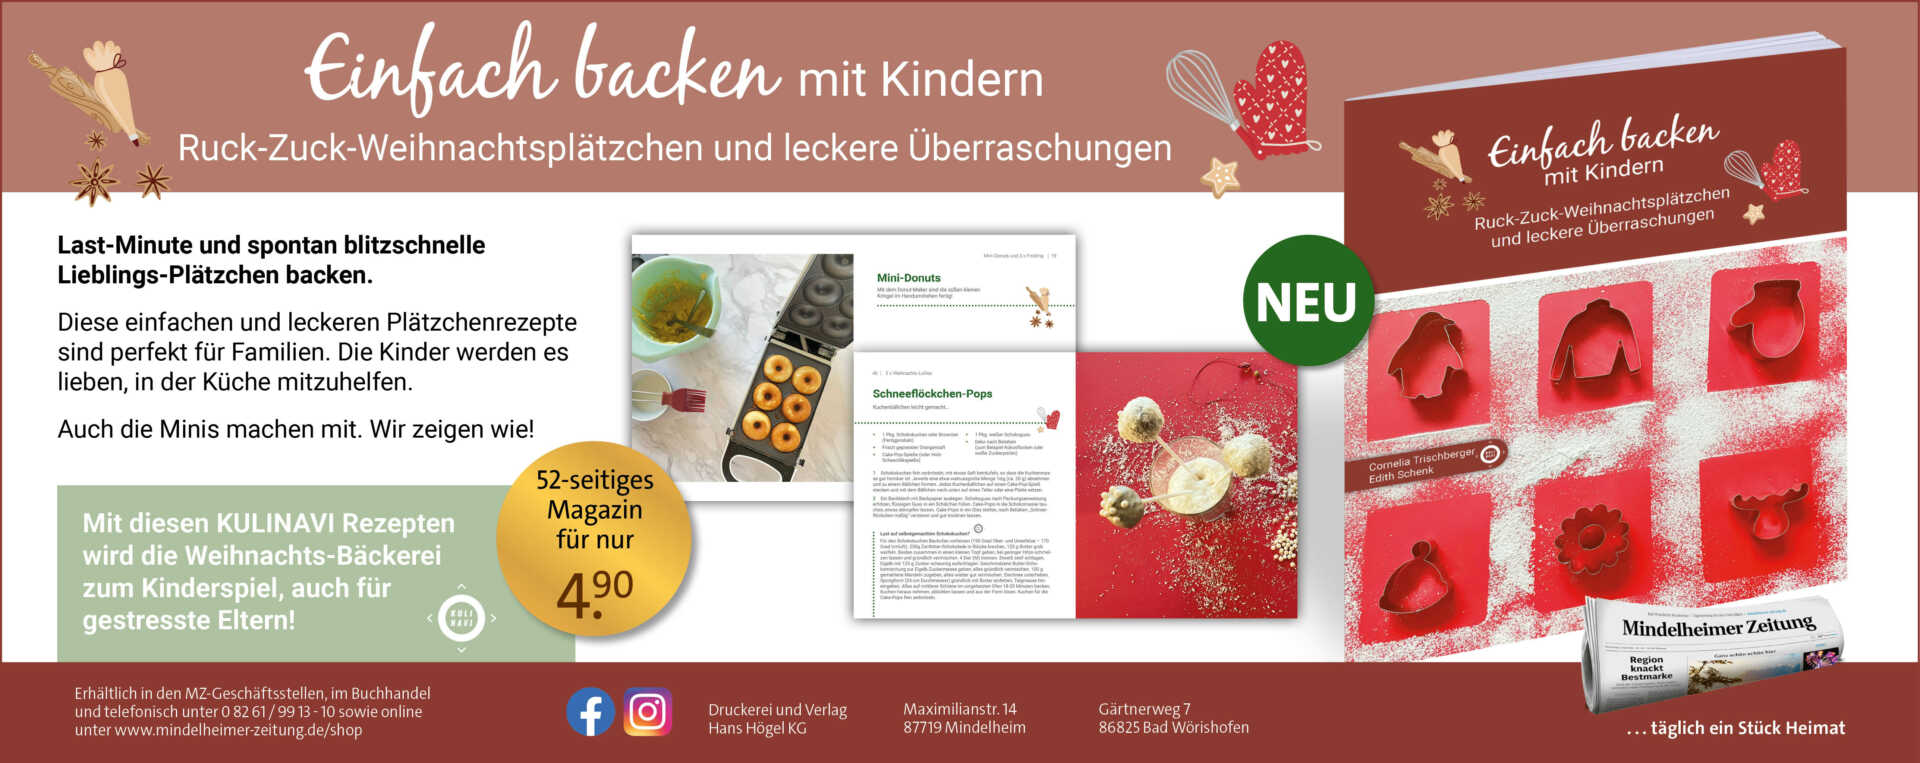 Anzeige - Backbuch -Einfach backen mit Kindern. Ruck-Zuck-Weihnachtsplätzchen und leckere Überraschungen